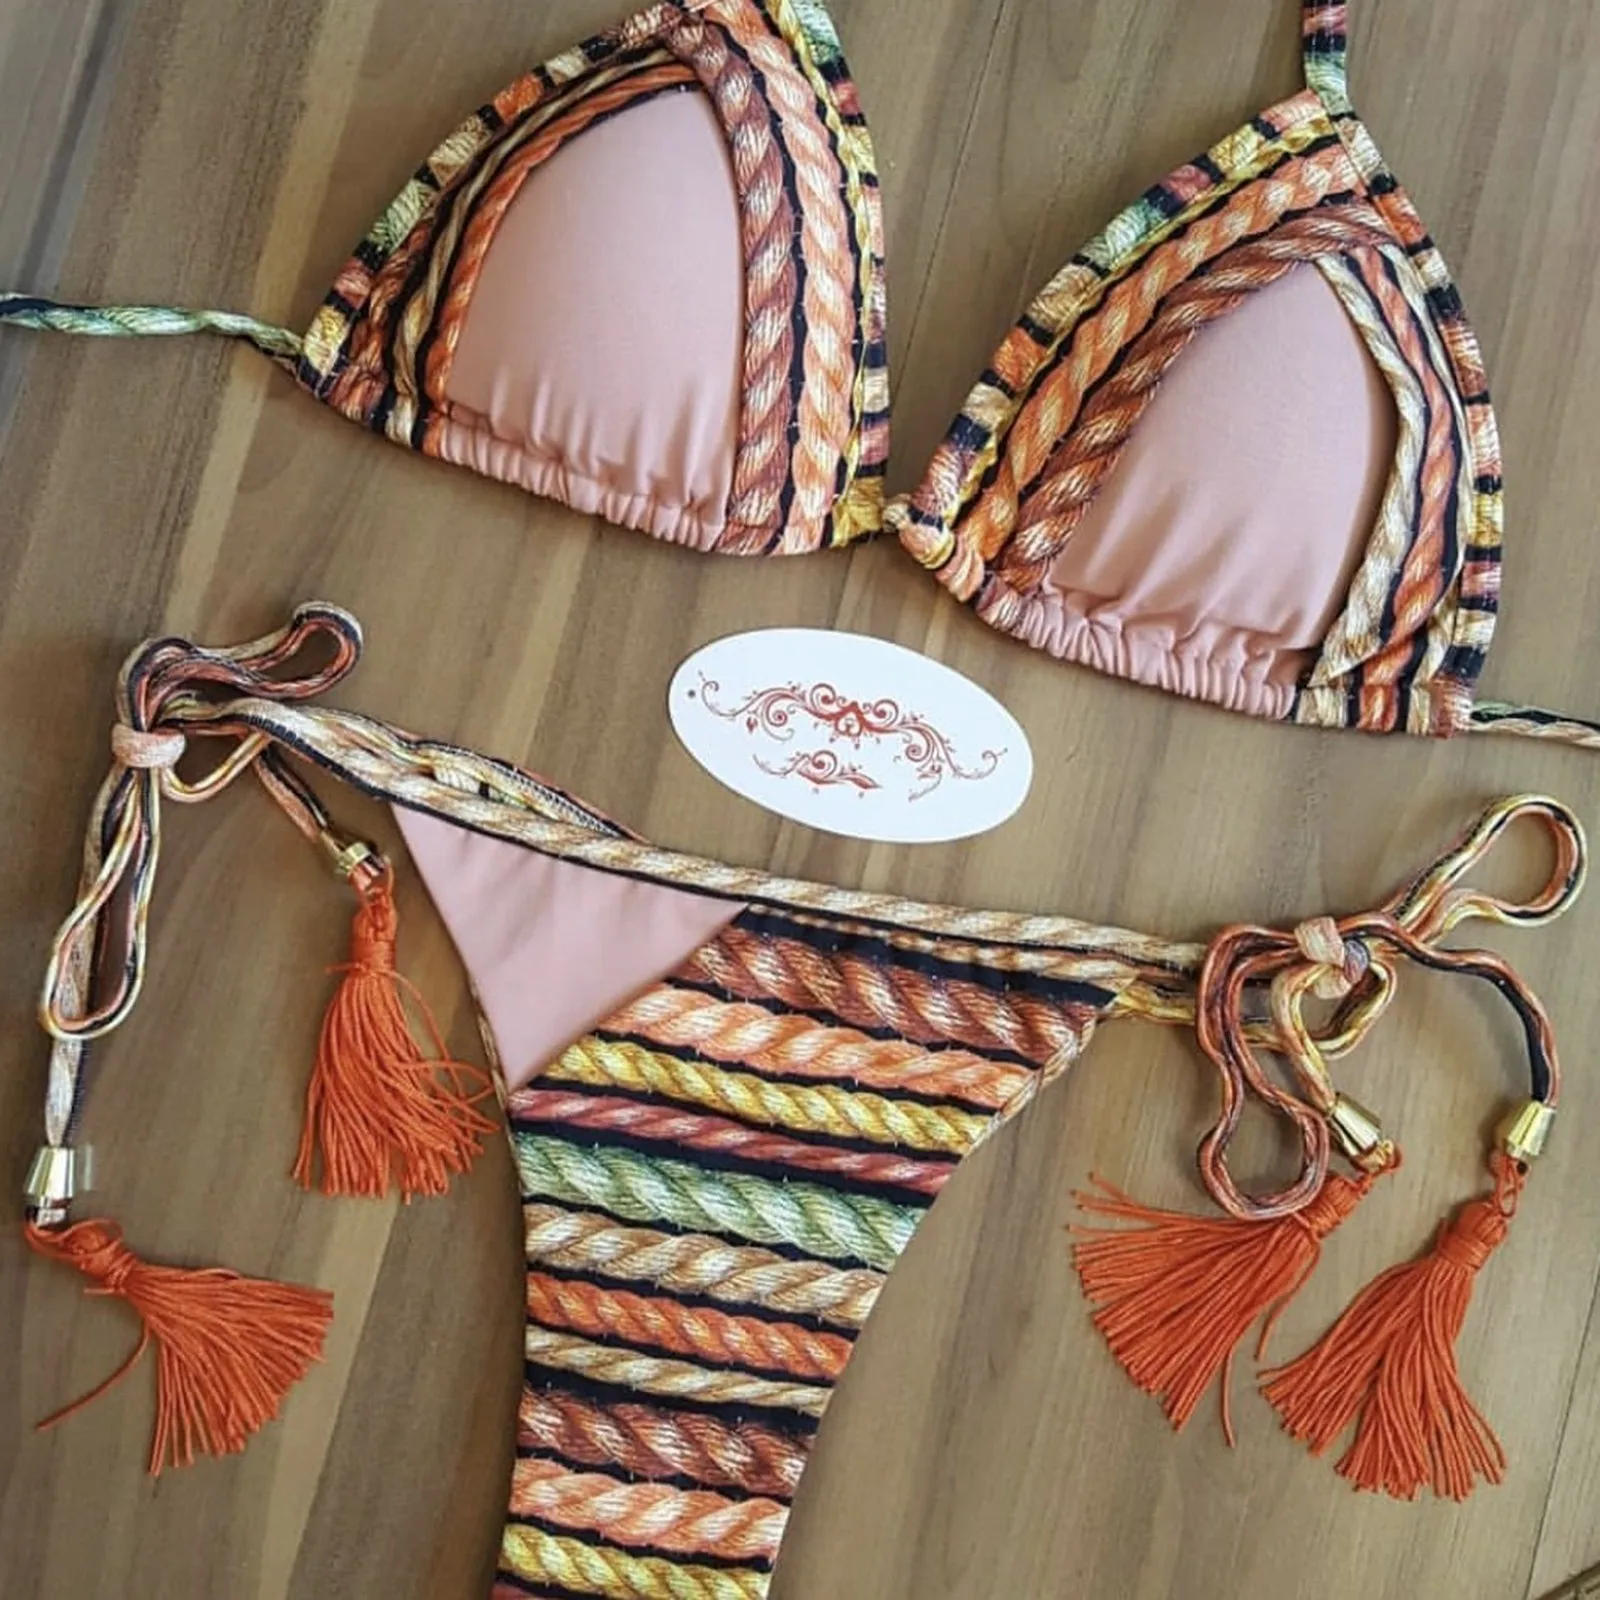 Bikini Sets Women's Swimsuit Lace Up Brazilian Bathing Two Piece Swimwear Summer Splicing Print Beach Beachwear Suit For Femme cute bikini sets